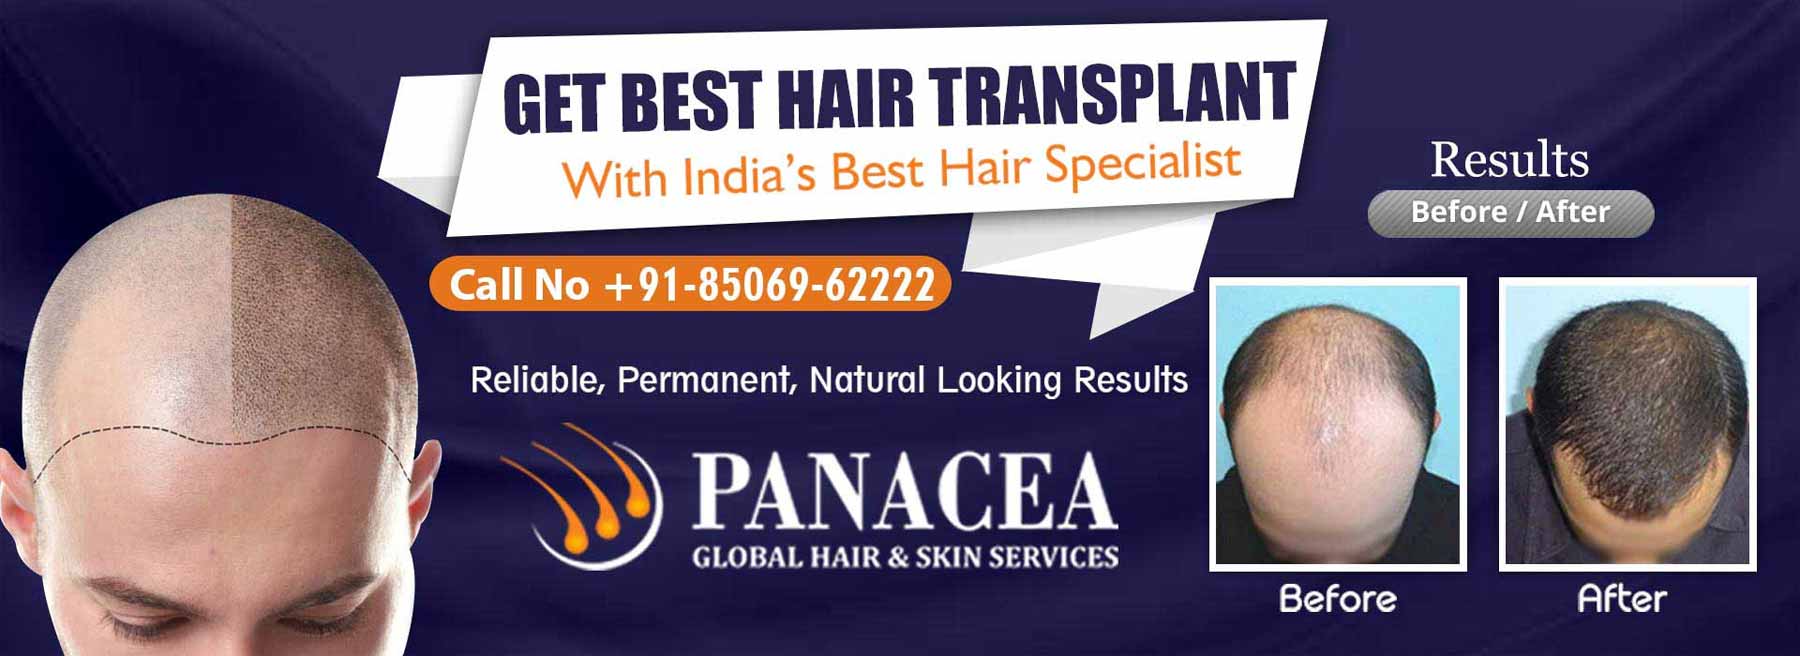 Get Best Hair Transplant - Panacea Global in Chittaurgarh